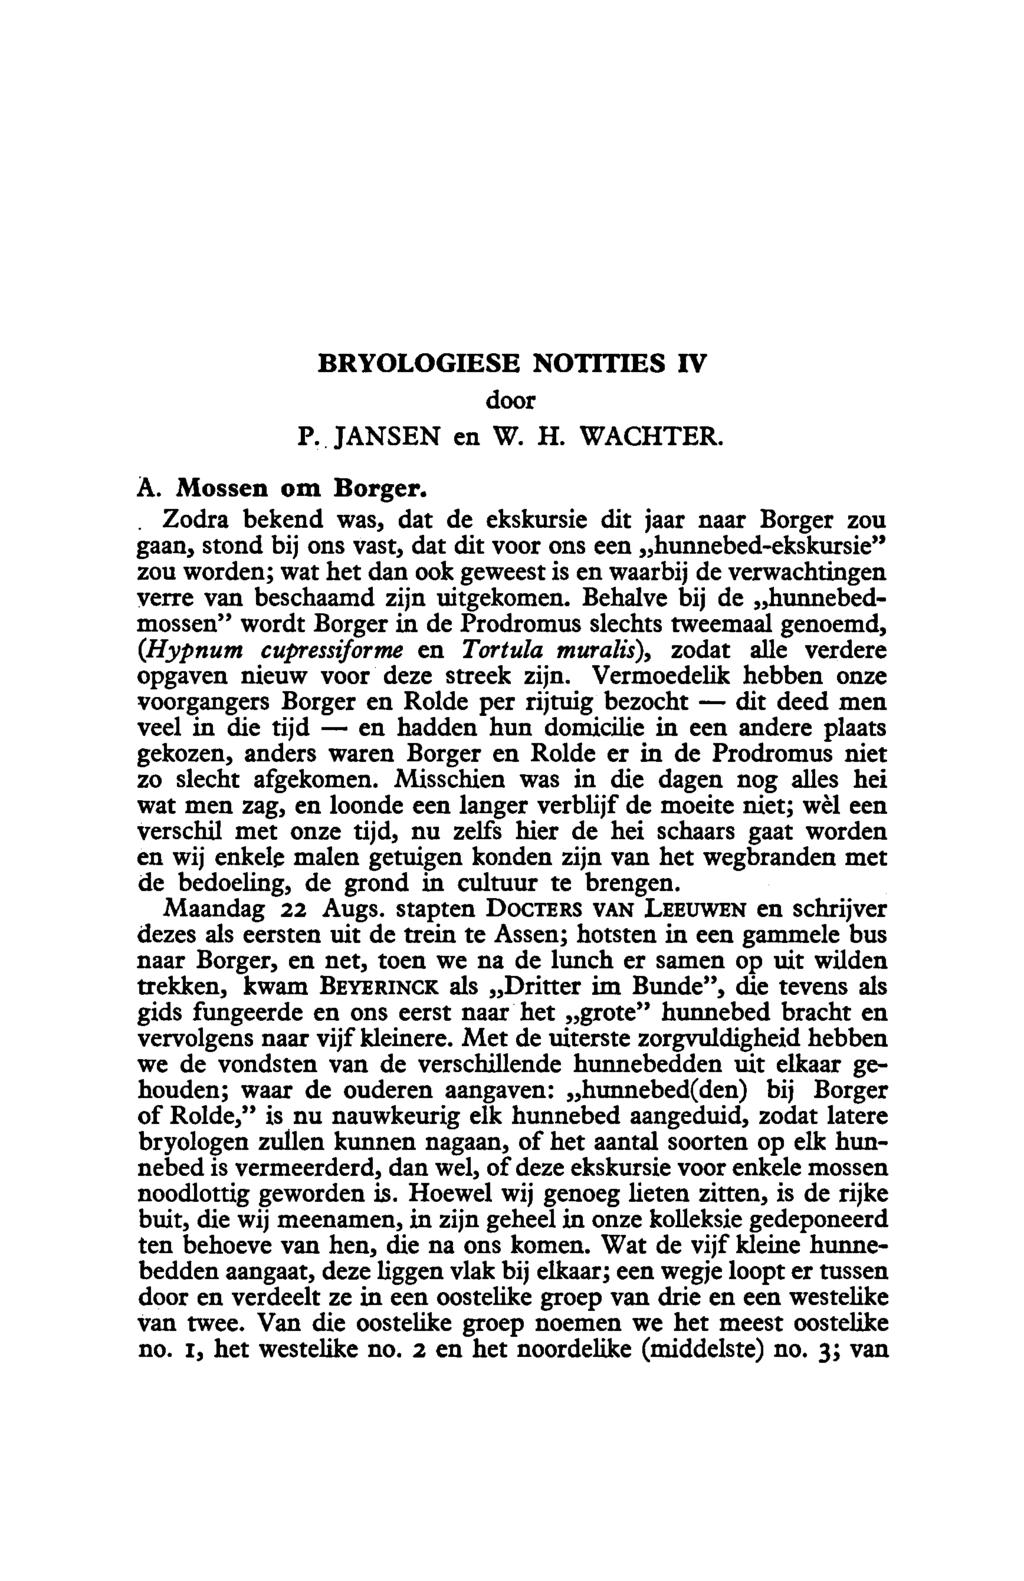 en dit Bryologiese Notities IV door P. Jansen en W.H. Wachteṛ A. Mossen om Borger.